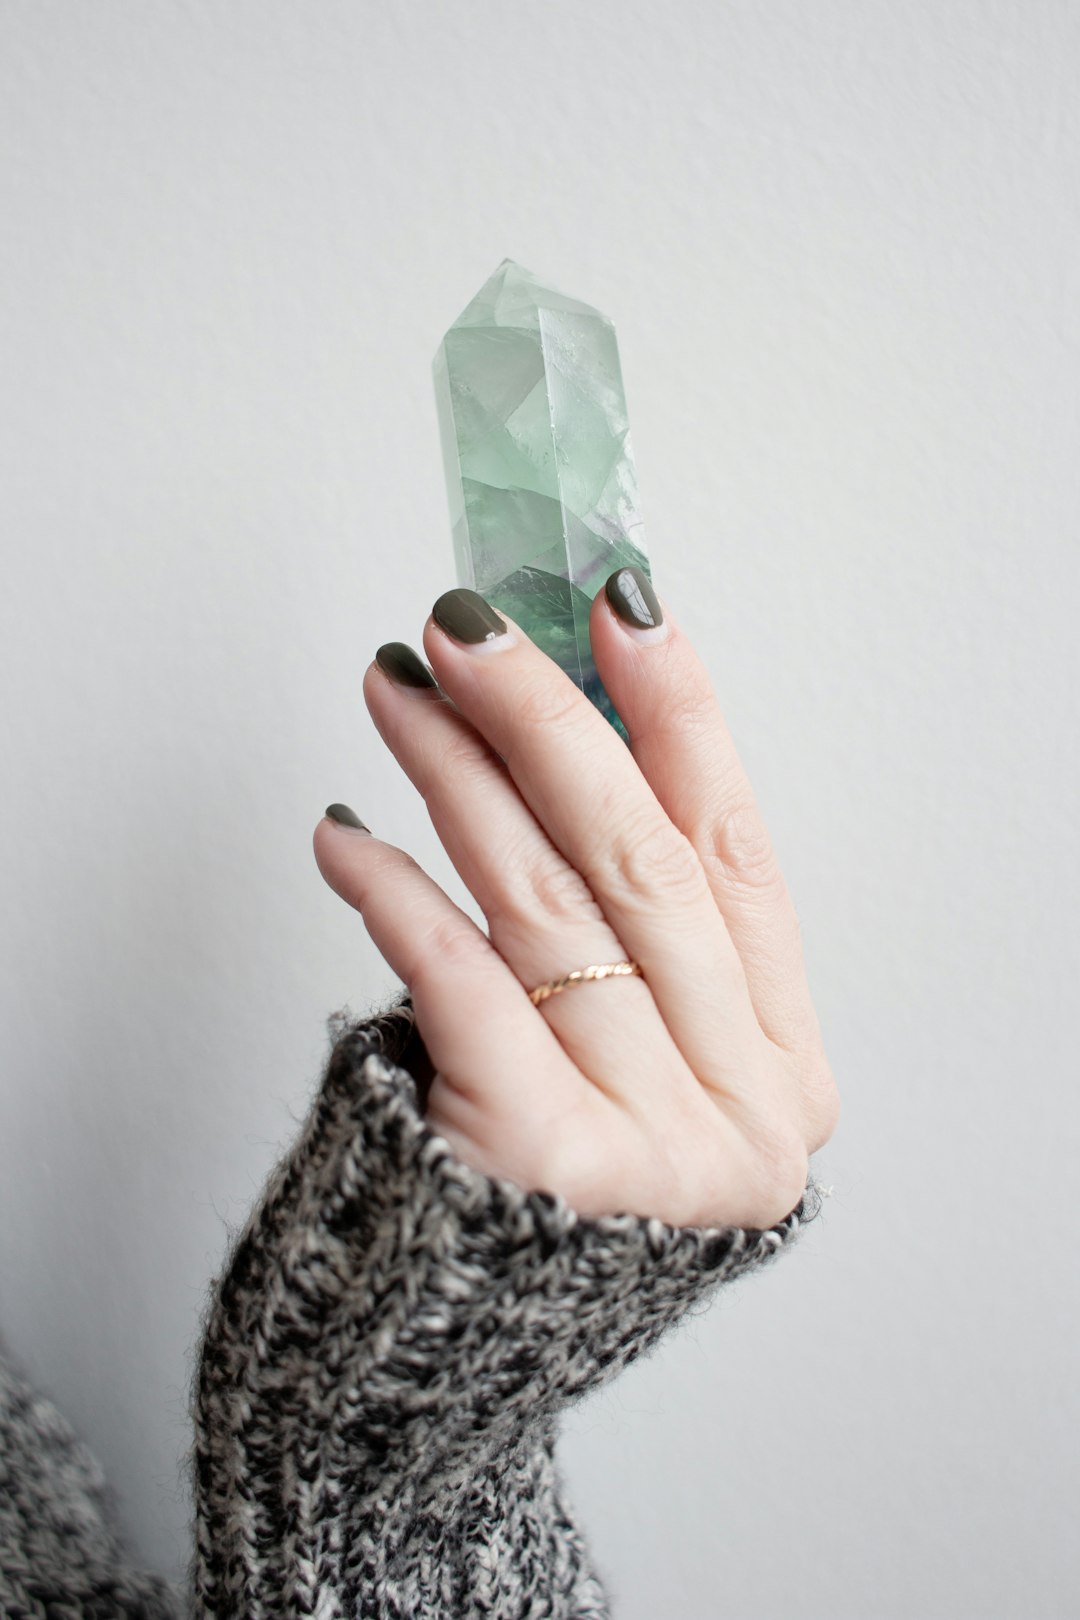 水晶手鍊消磁指南：5招實用妙法輕鬆淨化你的能量寶石